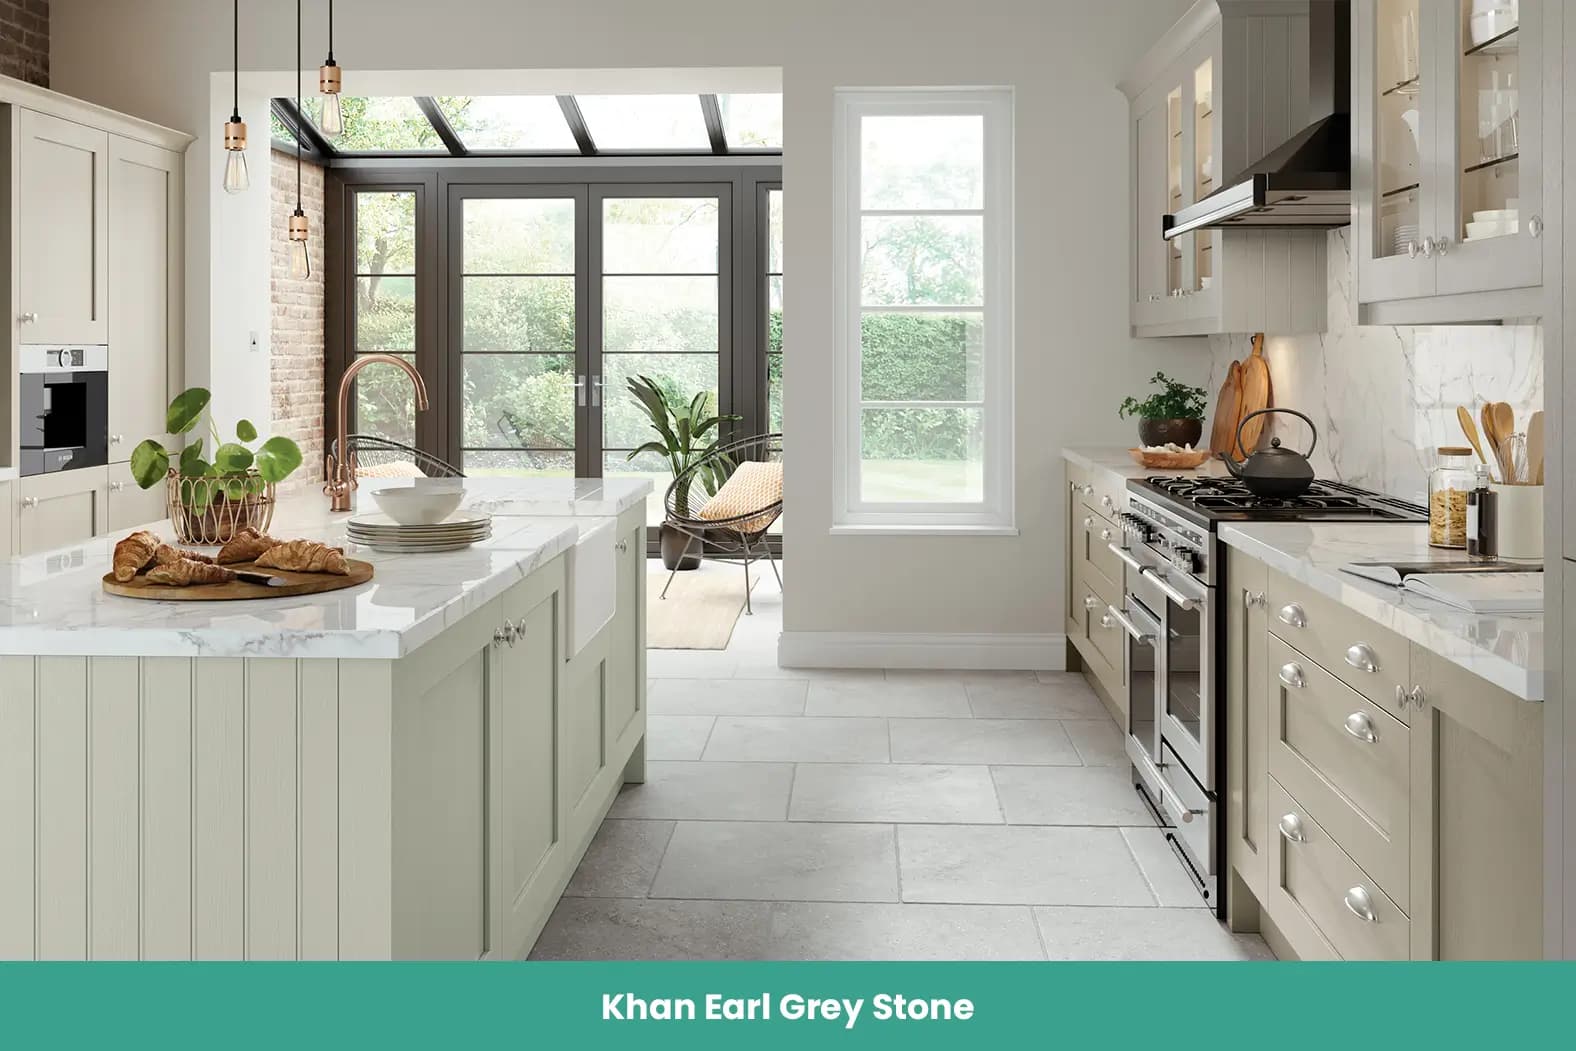 Khan Earl Grey Stone Kitchen